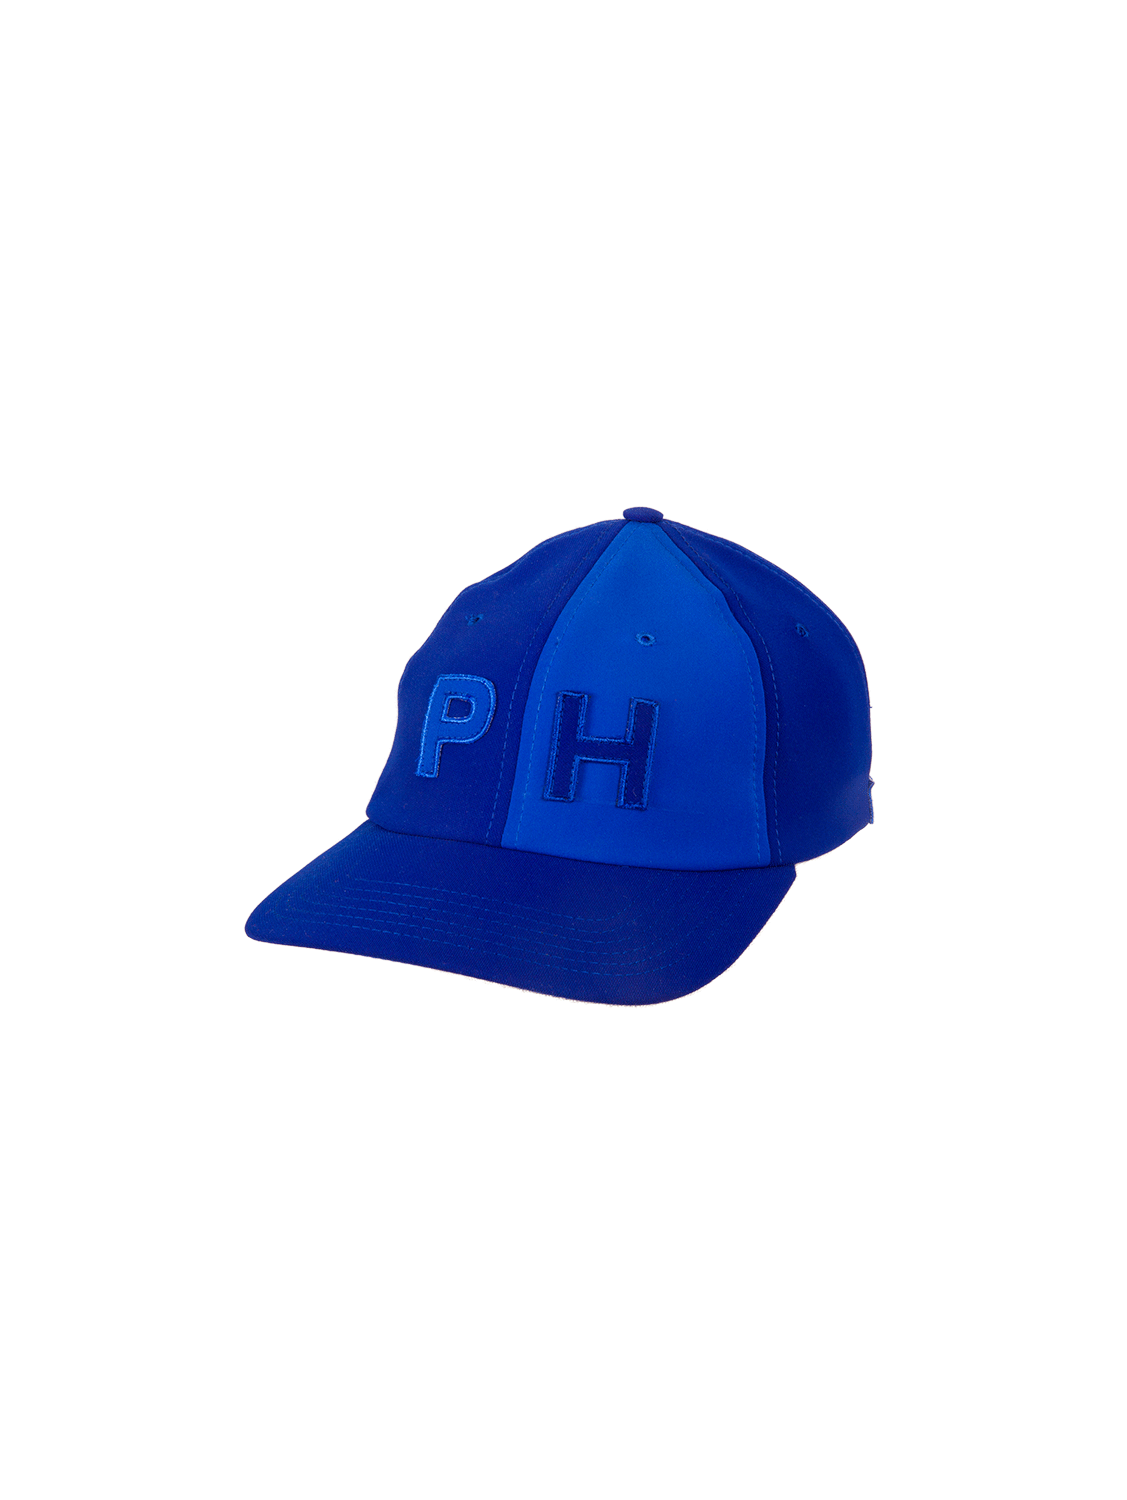 PH Blue Baseball Cap - Paris+Hendzel Handcrafted Goods